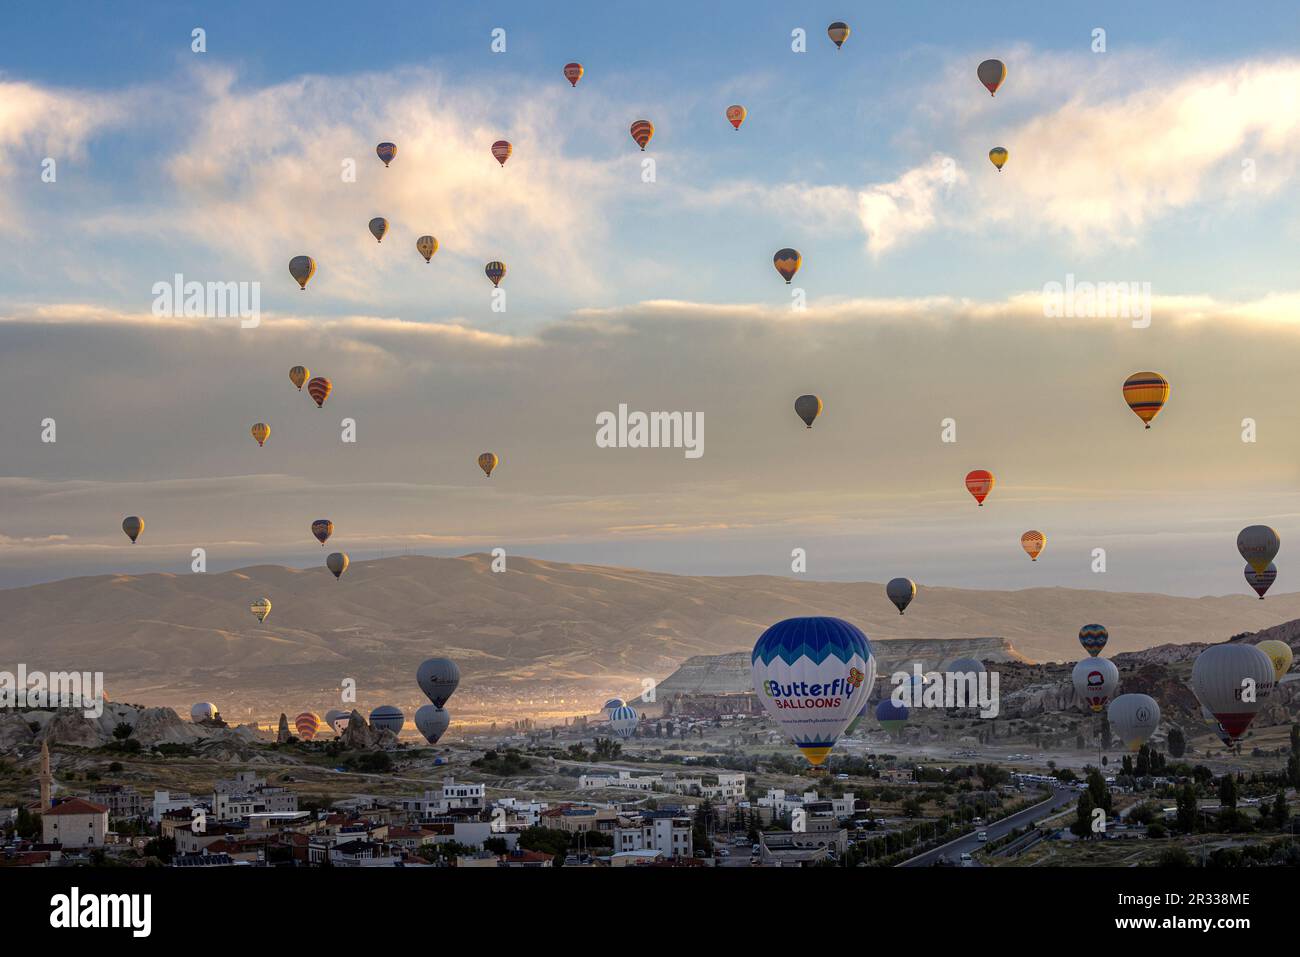 GÖREME/TURQUIE - 27 juin 2022 : beaucoup de ballons d'air chaud survolent Göreme. Turquie Banque D'Images